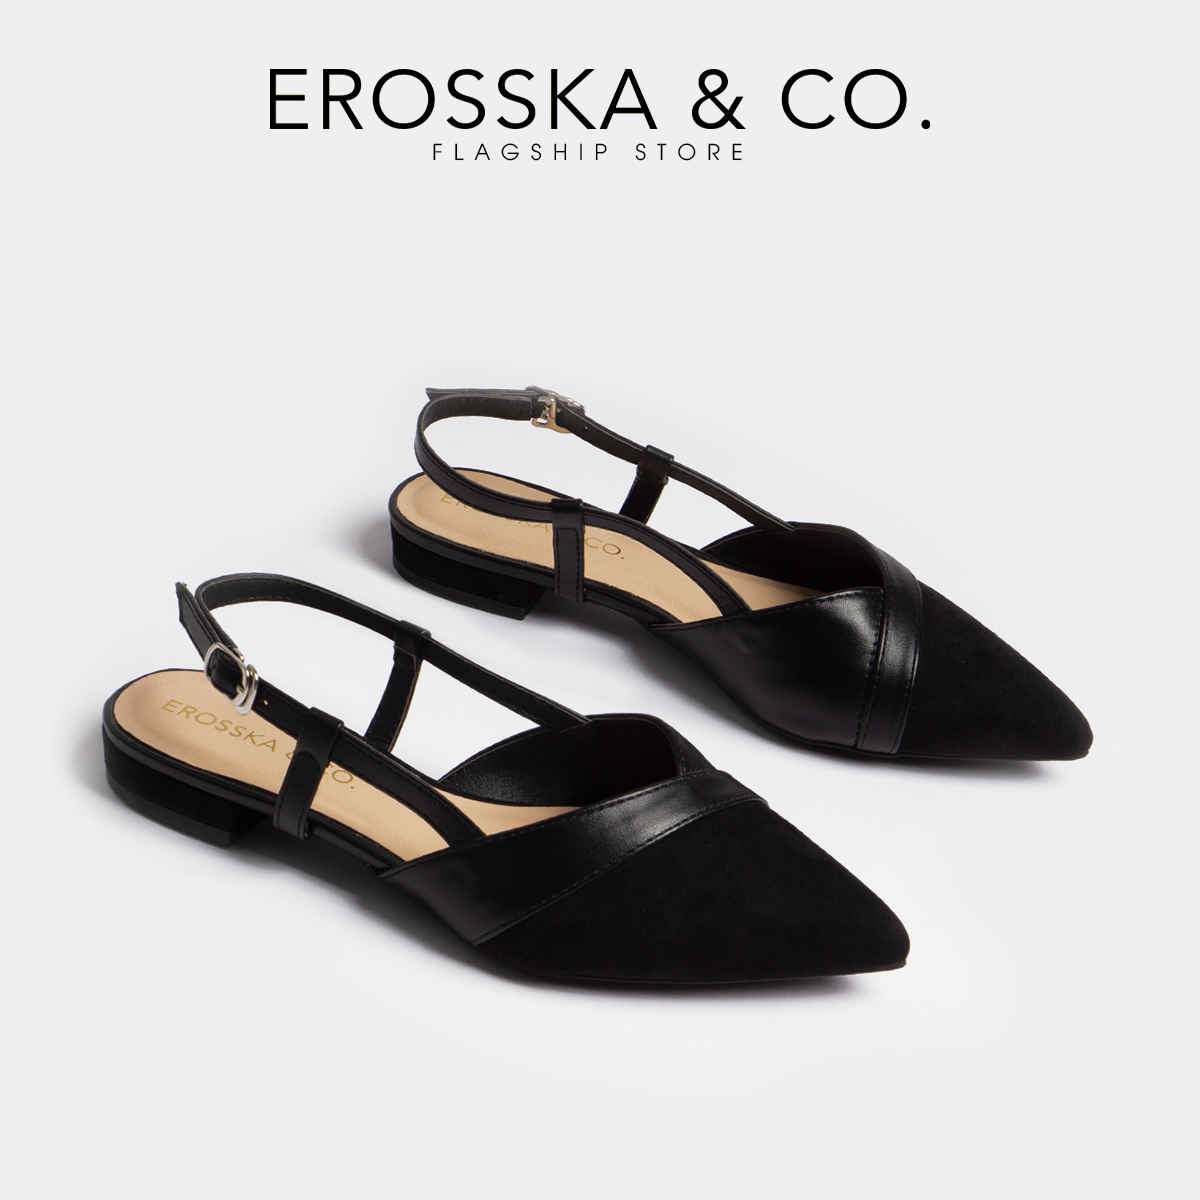 Giày Sandal Nữ Đế Bệt Mũi Nhọn Thời Trang Erosska EL005 ( Màu Đen)